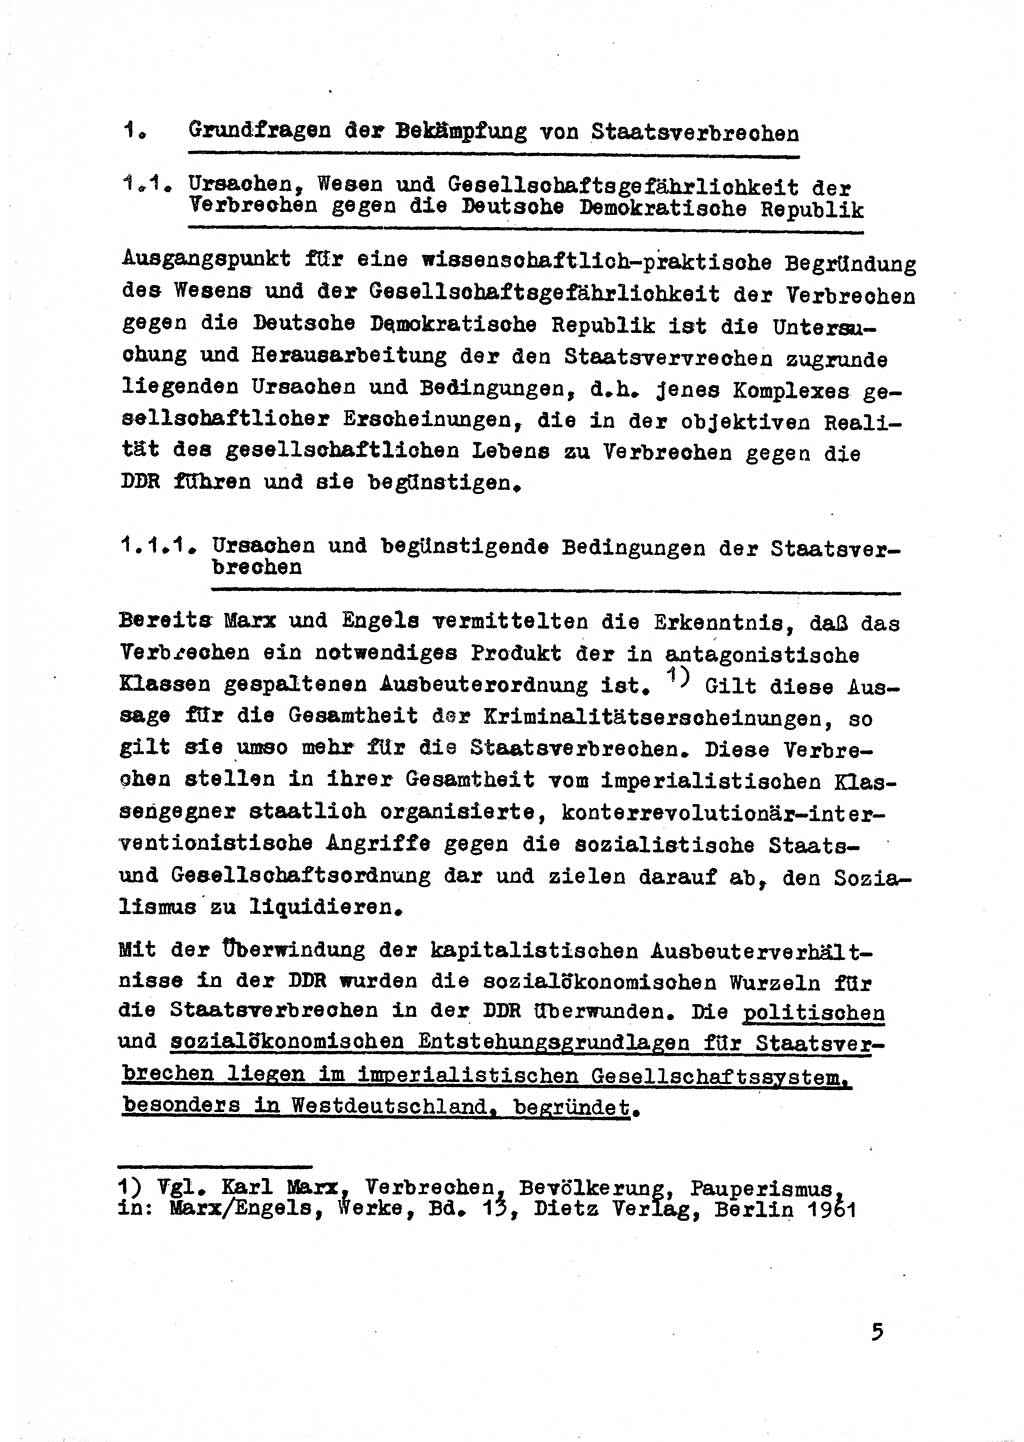 Strafrecht der DDR (Deutsche Demokratische Republik), Besonderer Teil, Lehrmaterial, Heft 2 1969, Seite 5 (Strafr. DDR BT Lehrmat. H. 2 1969, S. 5)